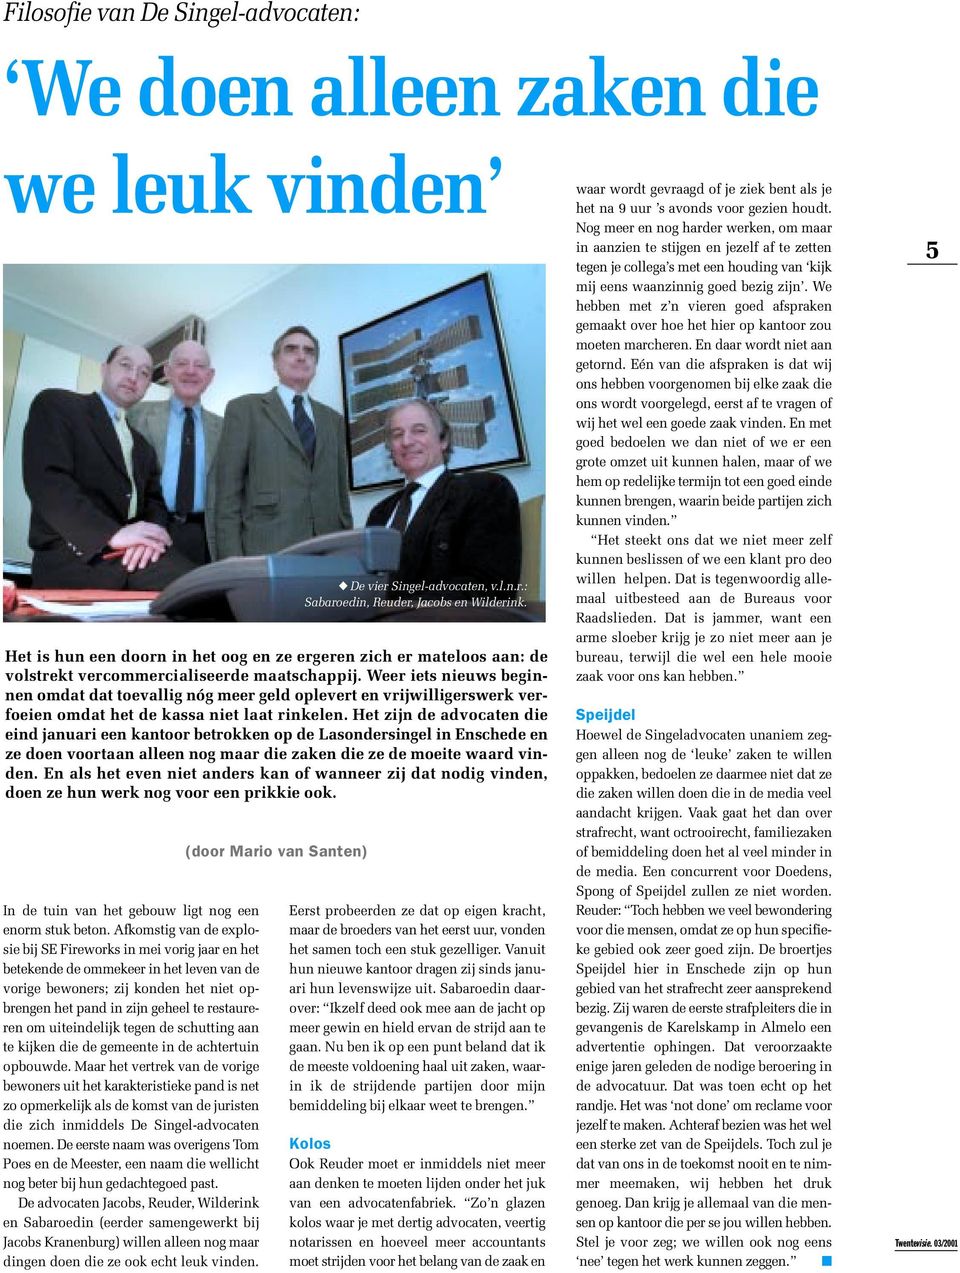 Het zijn de advocaten die eind januari een kantoor betrokken op de Lasondersingel in Enschede en ze doen voortaan alleen nog maar die zaken die ze de moeite waard vinden.